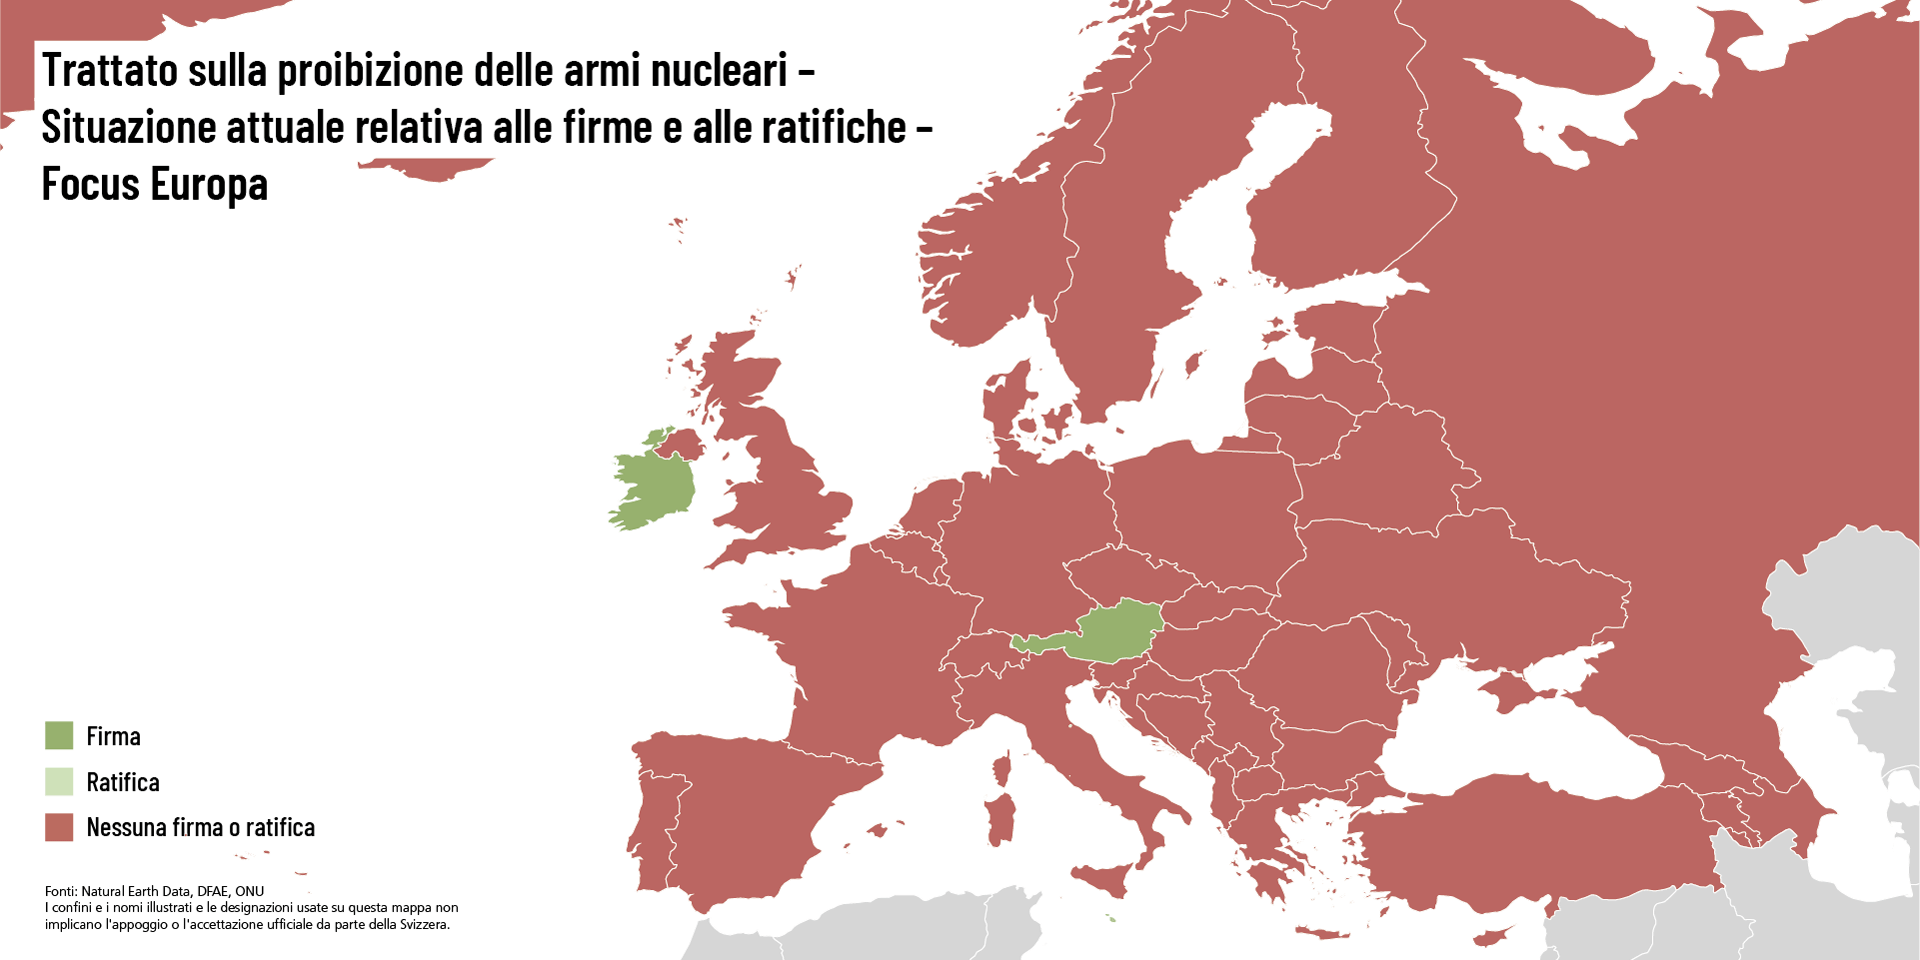 Mappa dell'Europa, in cui tutti i Paesi sono segnati in rosso tranne Austria, Liechtenstein e  Irlanda, segnati in verde. Quest’ultimi hanno aderito al TPNW.